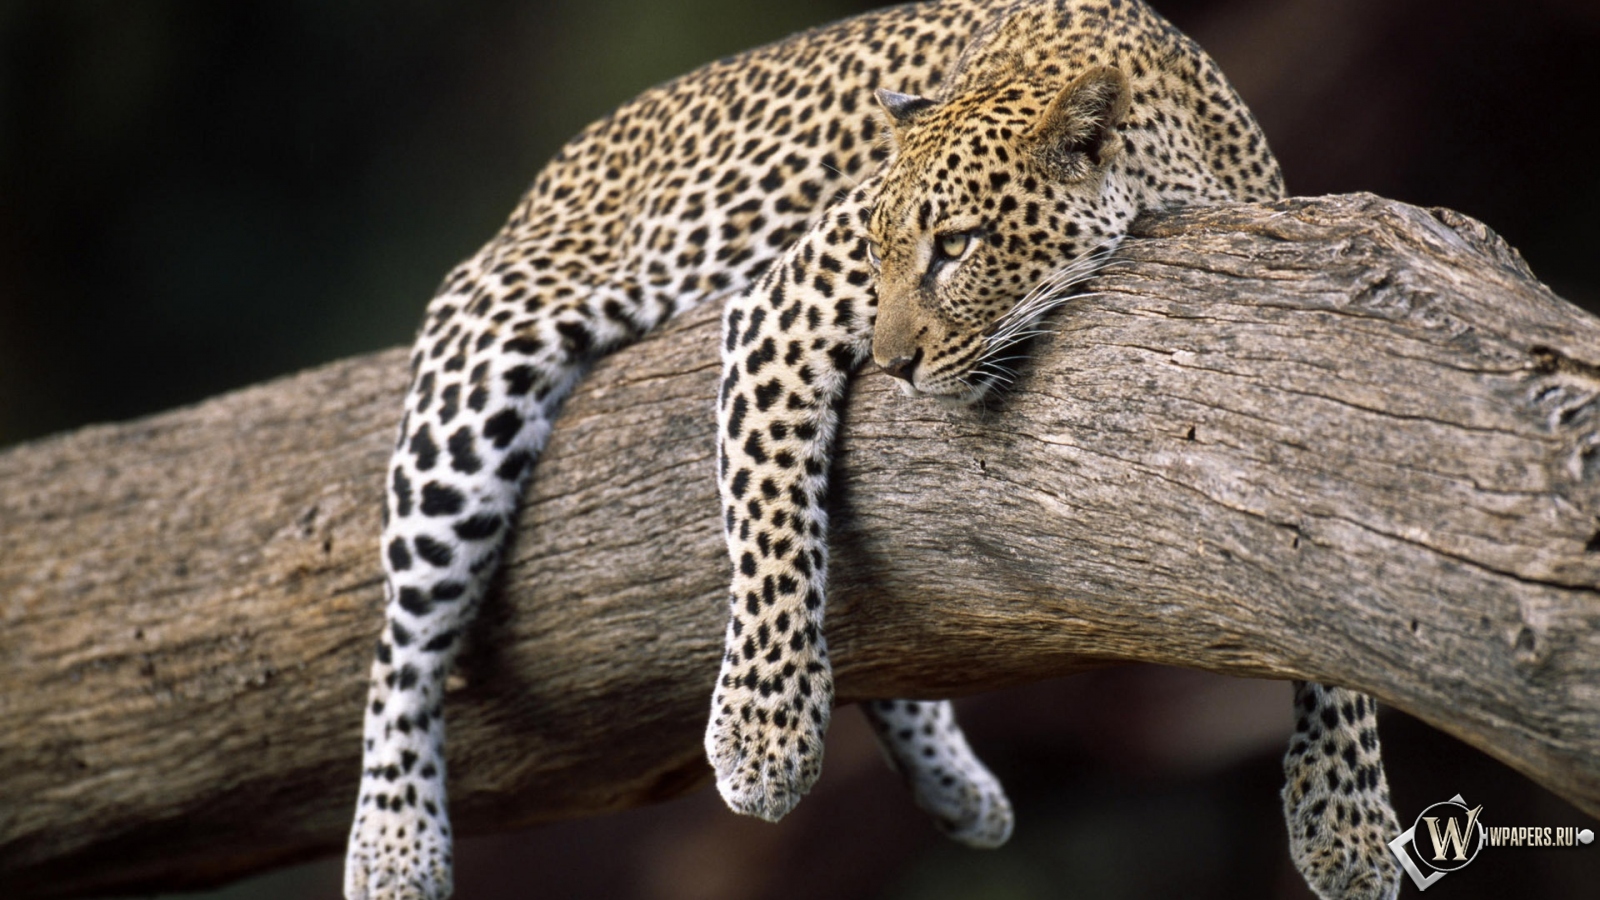 Леопард на дереве 1600x900